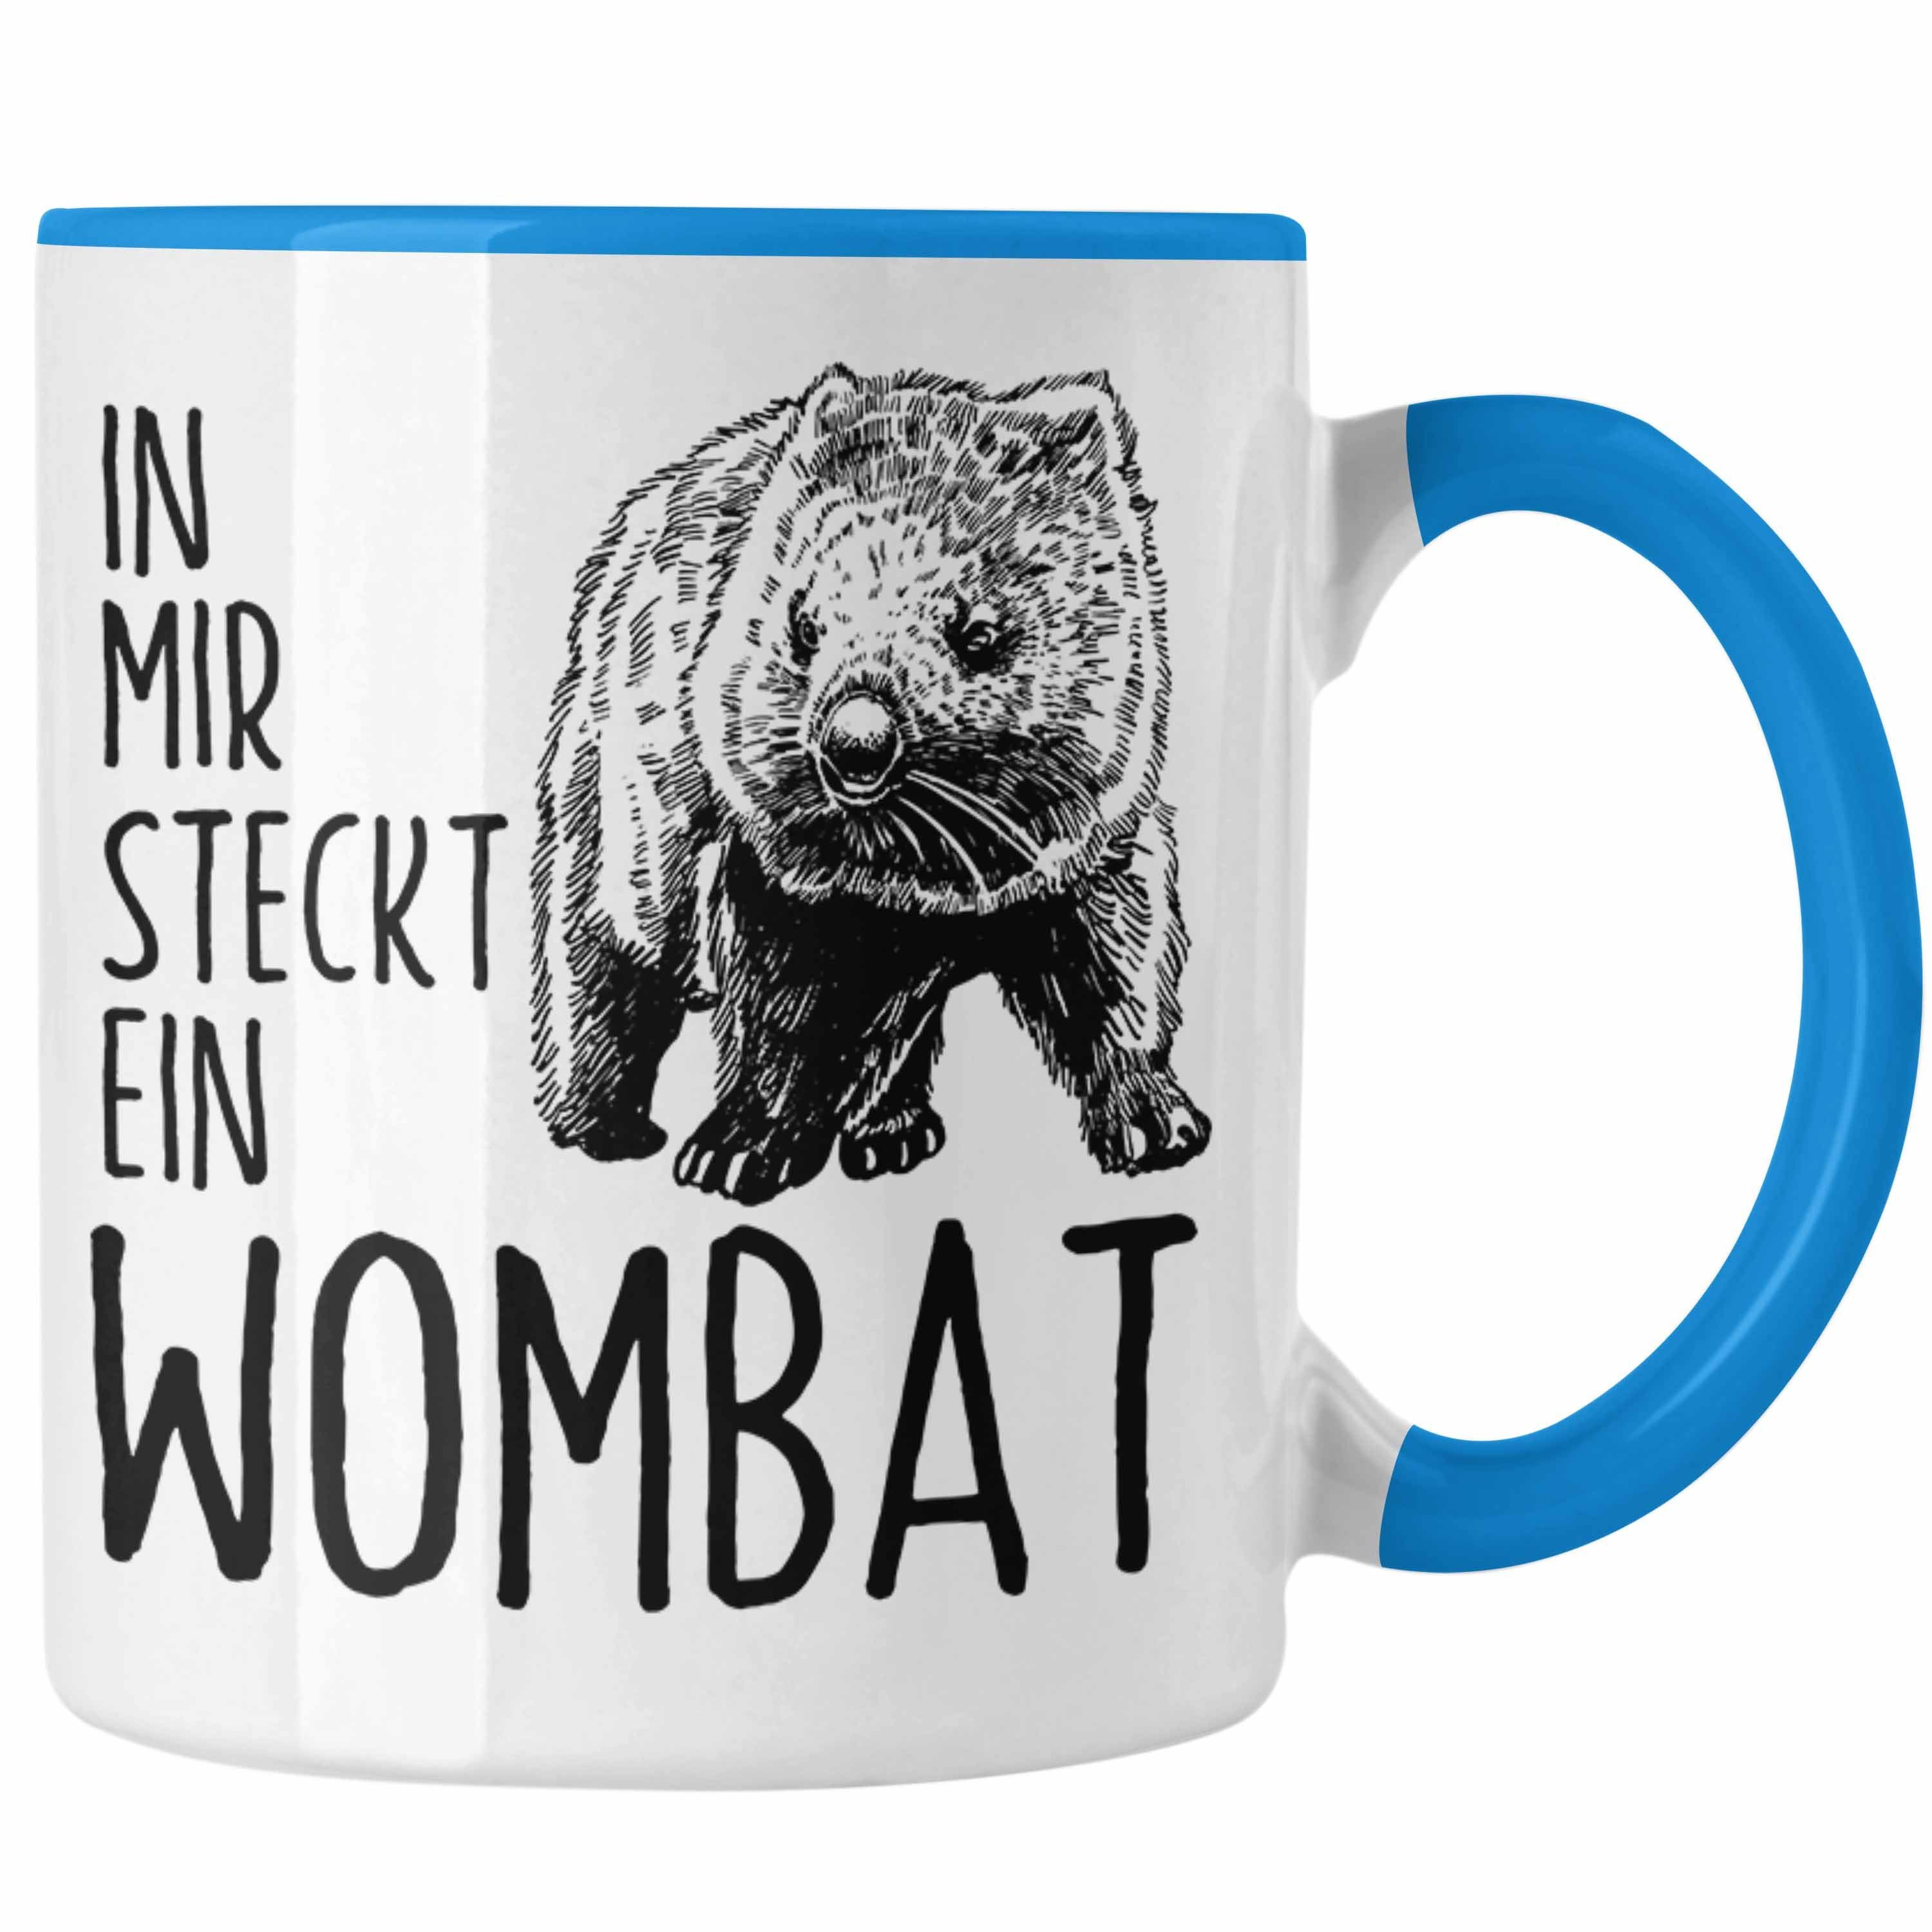 Trendation Tasse Wombat Tasse Geschenk Wombat für Mir Wombat Liebhaber Steckt Ein In Blau